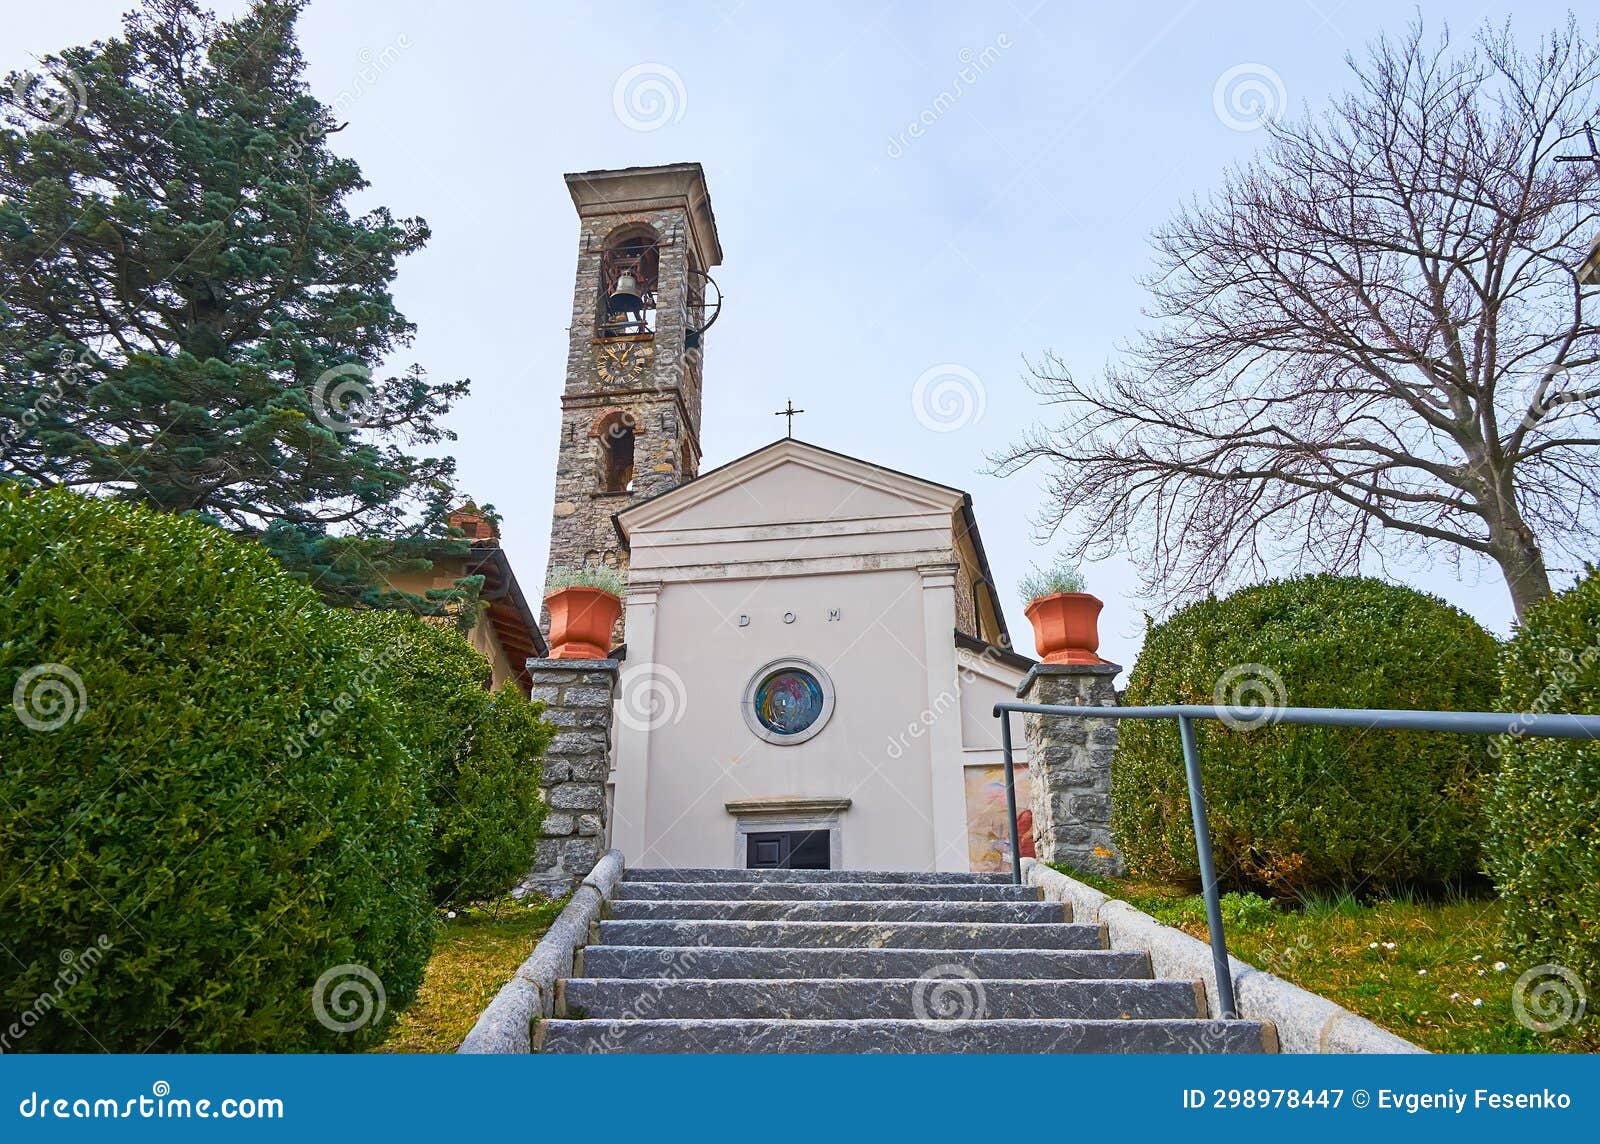 santi simone e fedele church on the hill, bre, ticino, switzerland